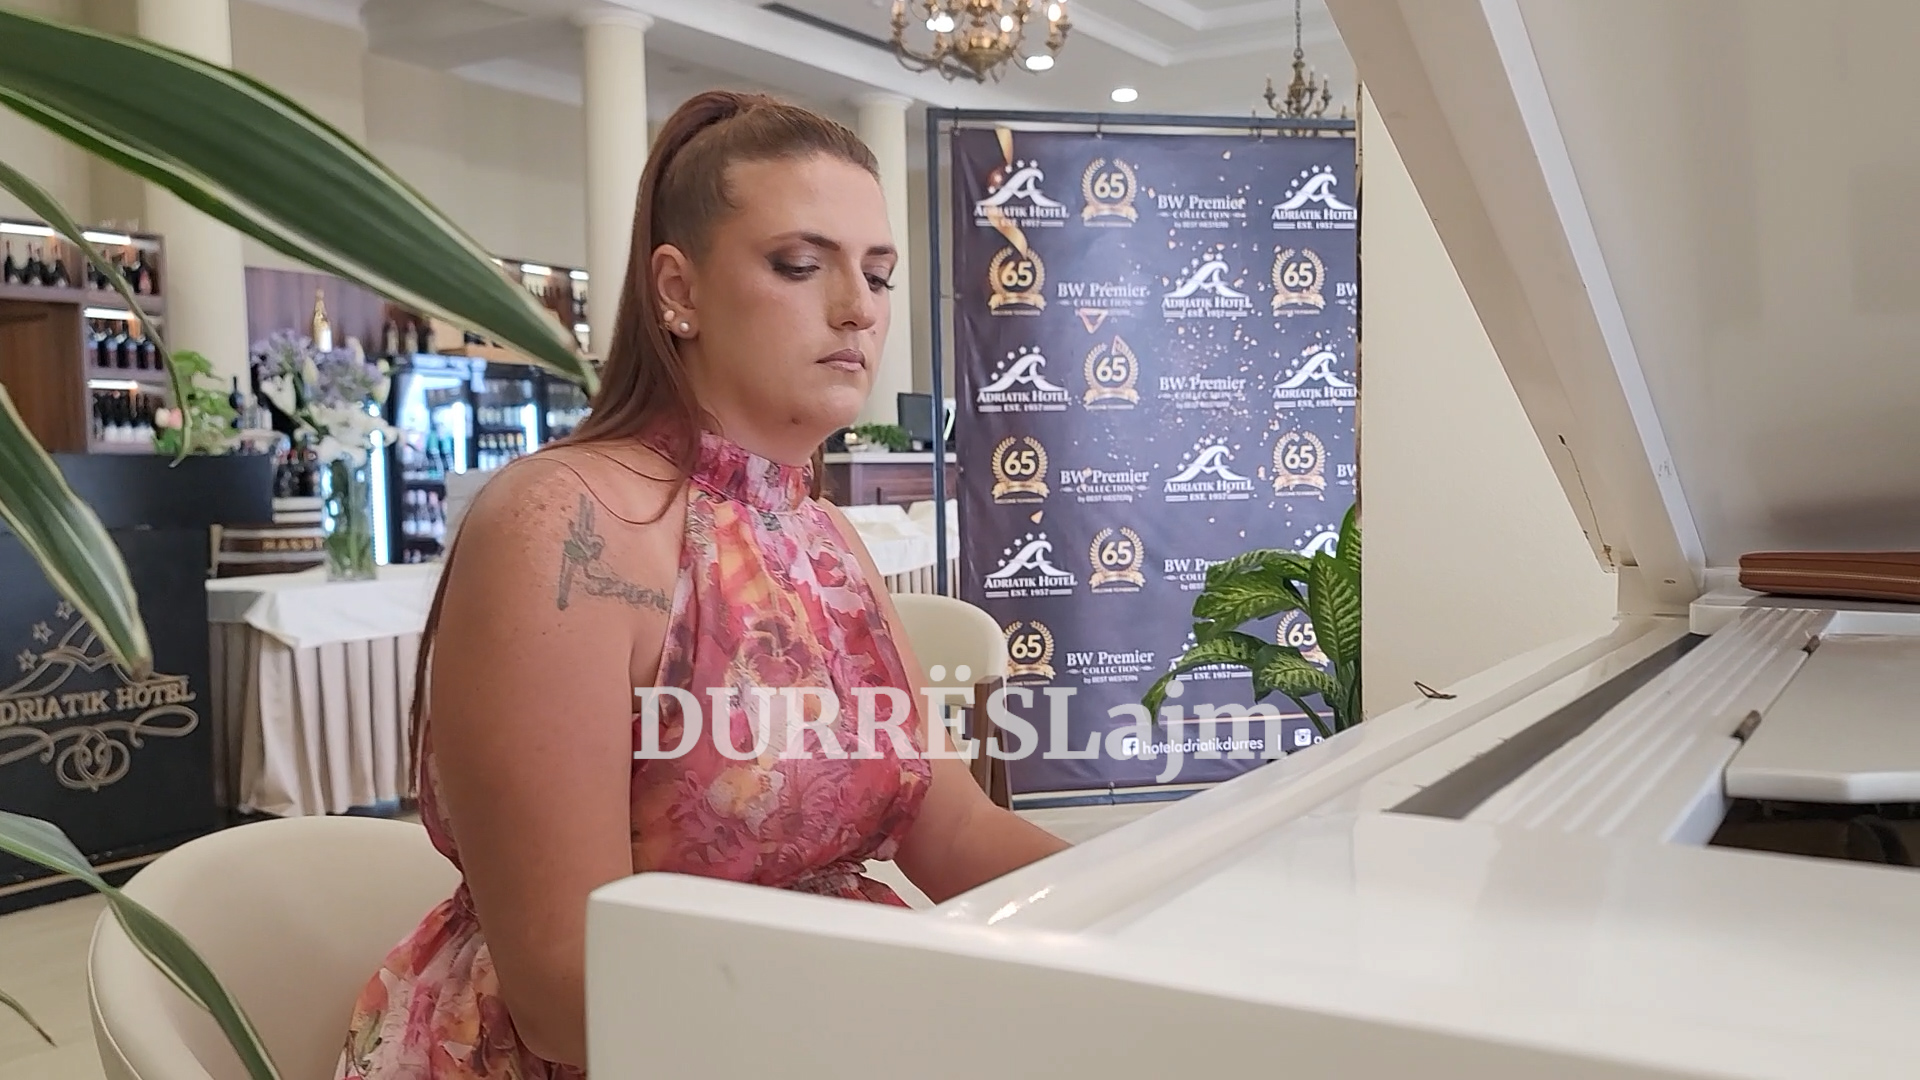 Pianistja nga Durrësi që kuron përmes muzikoterapisë (VIDEO)